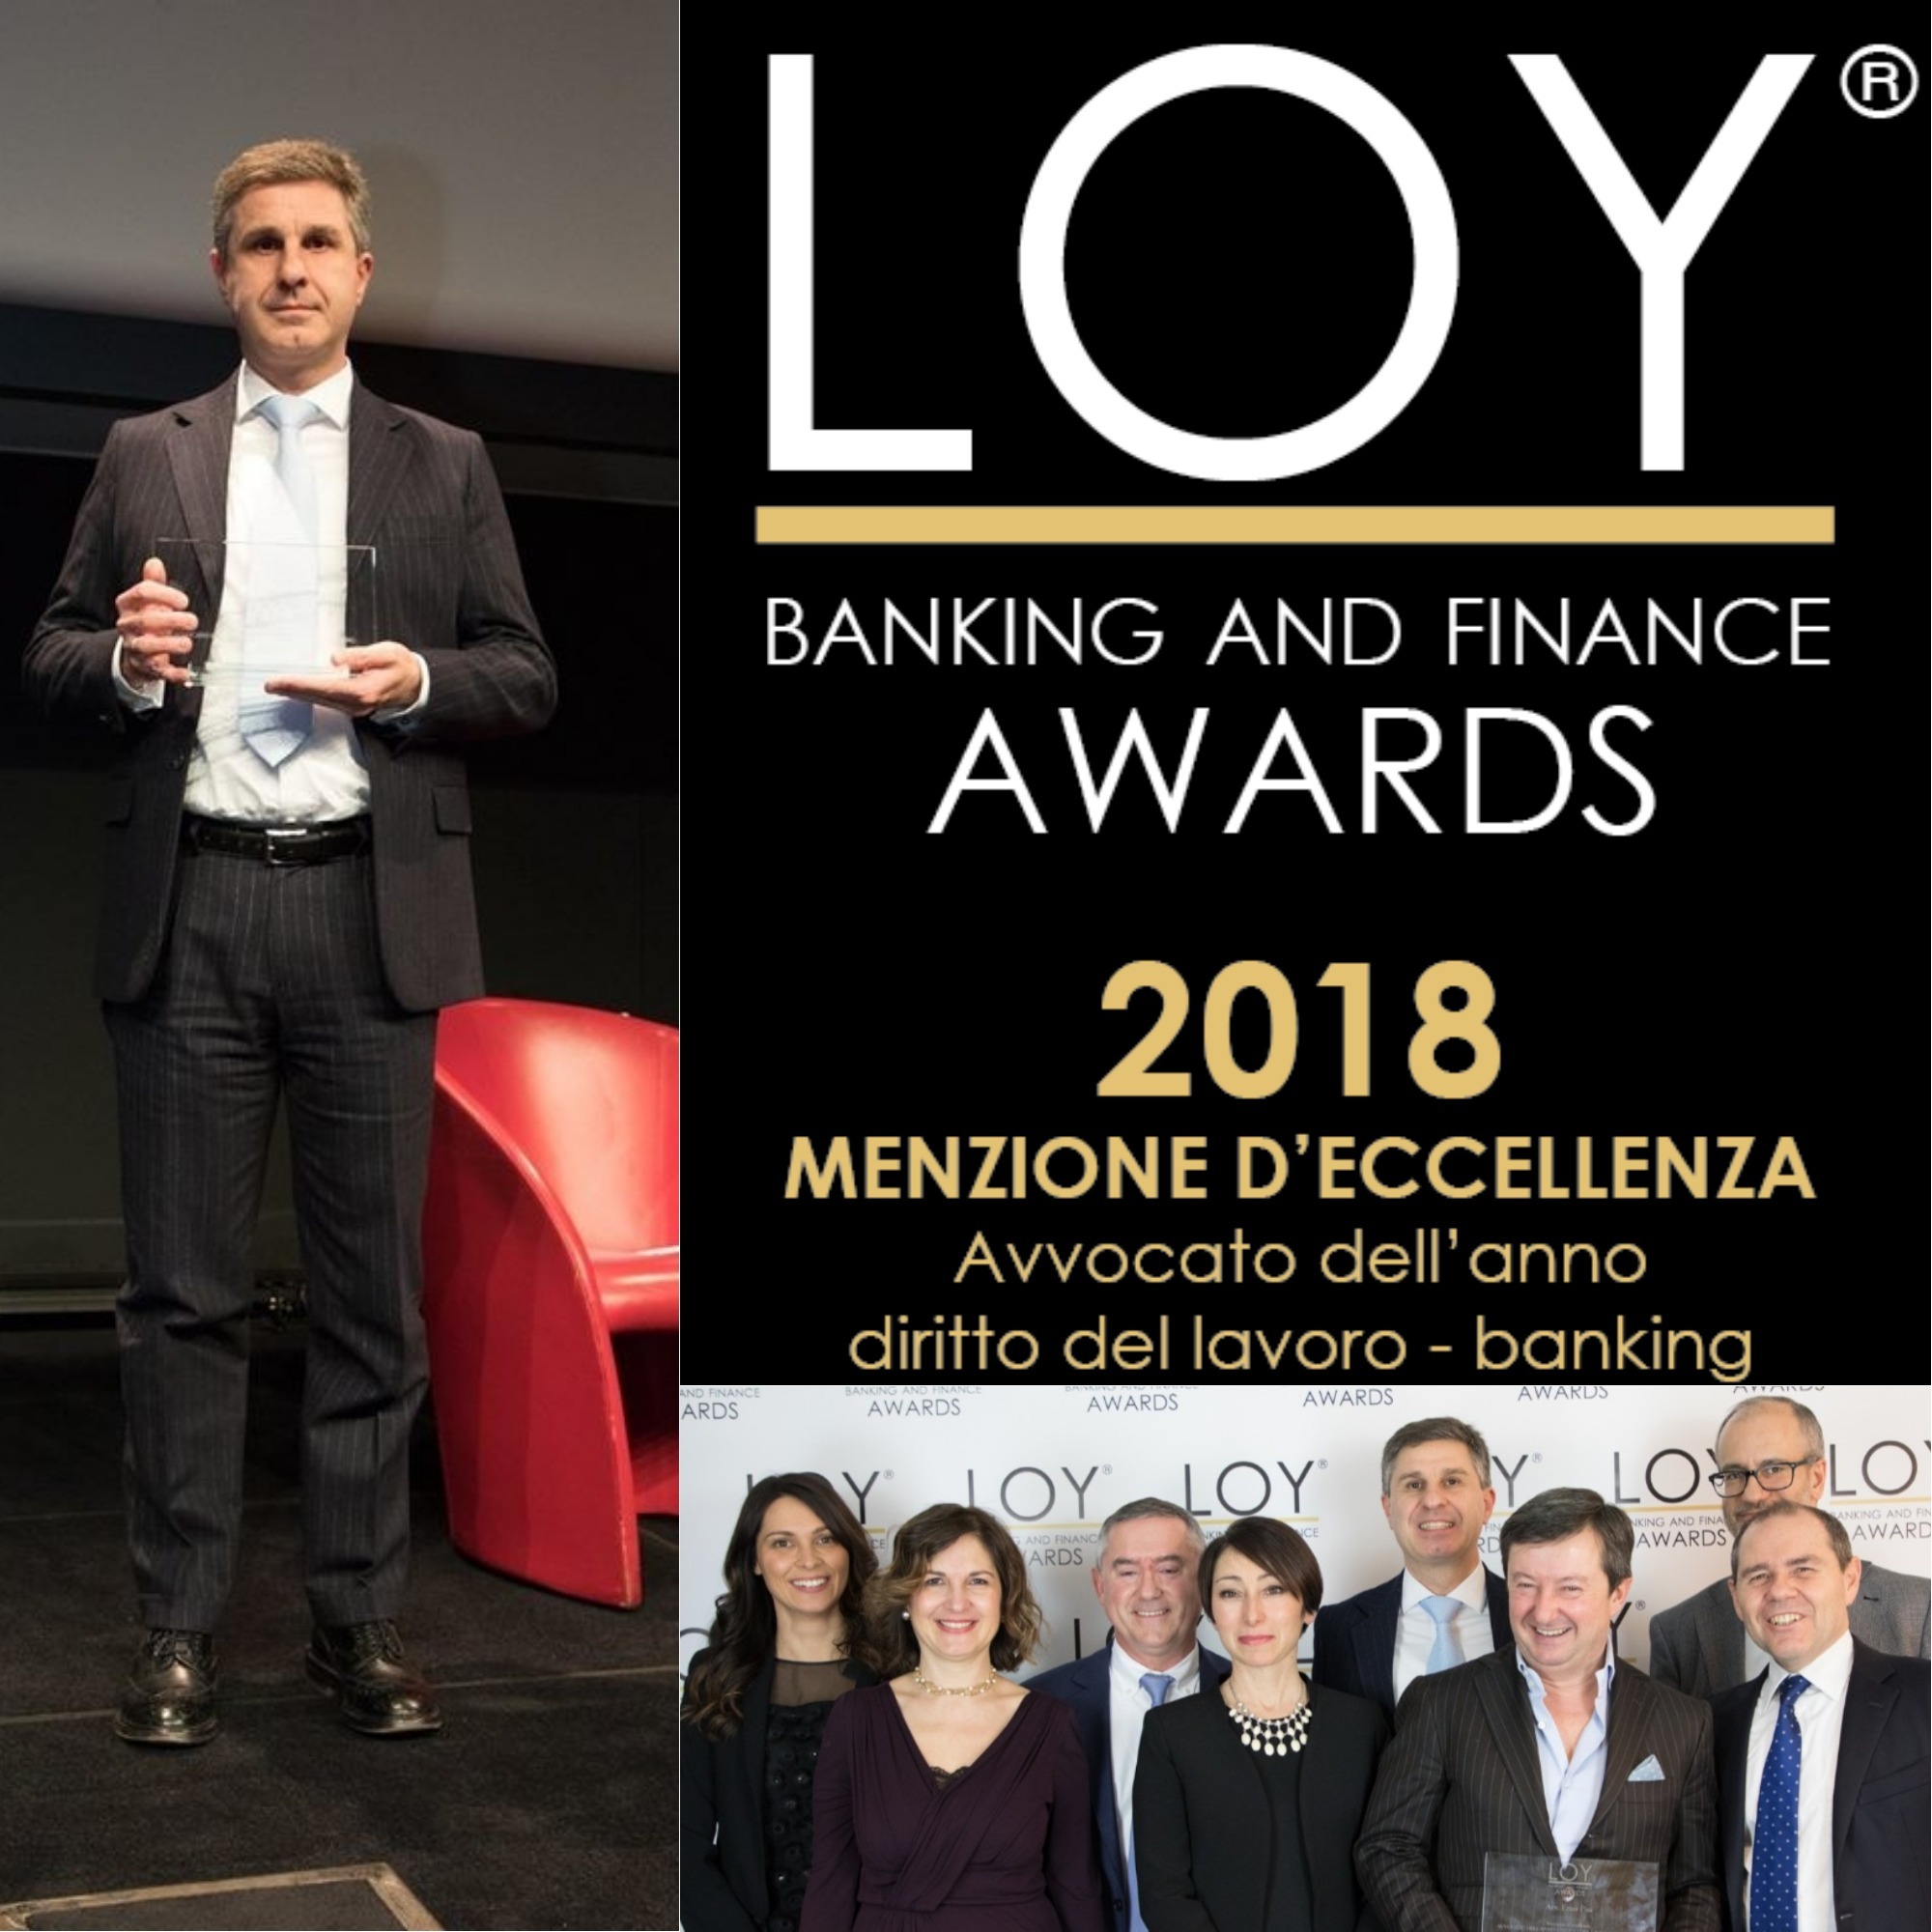 Loy Banking & Finance AWARDS 2018: l'avv. Enzo Pisa "Avvocato dell'anno diritto del lavoro-banking"